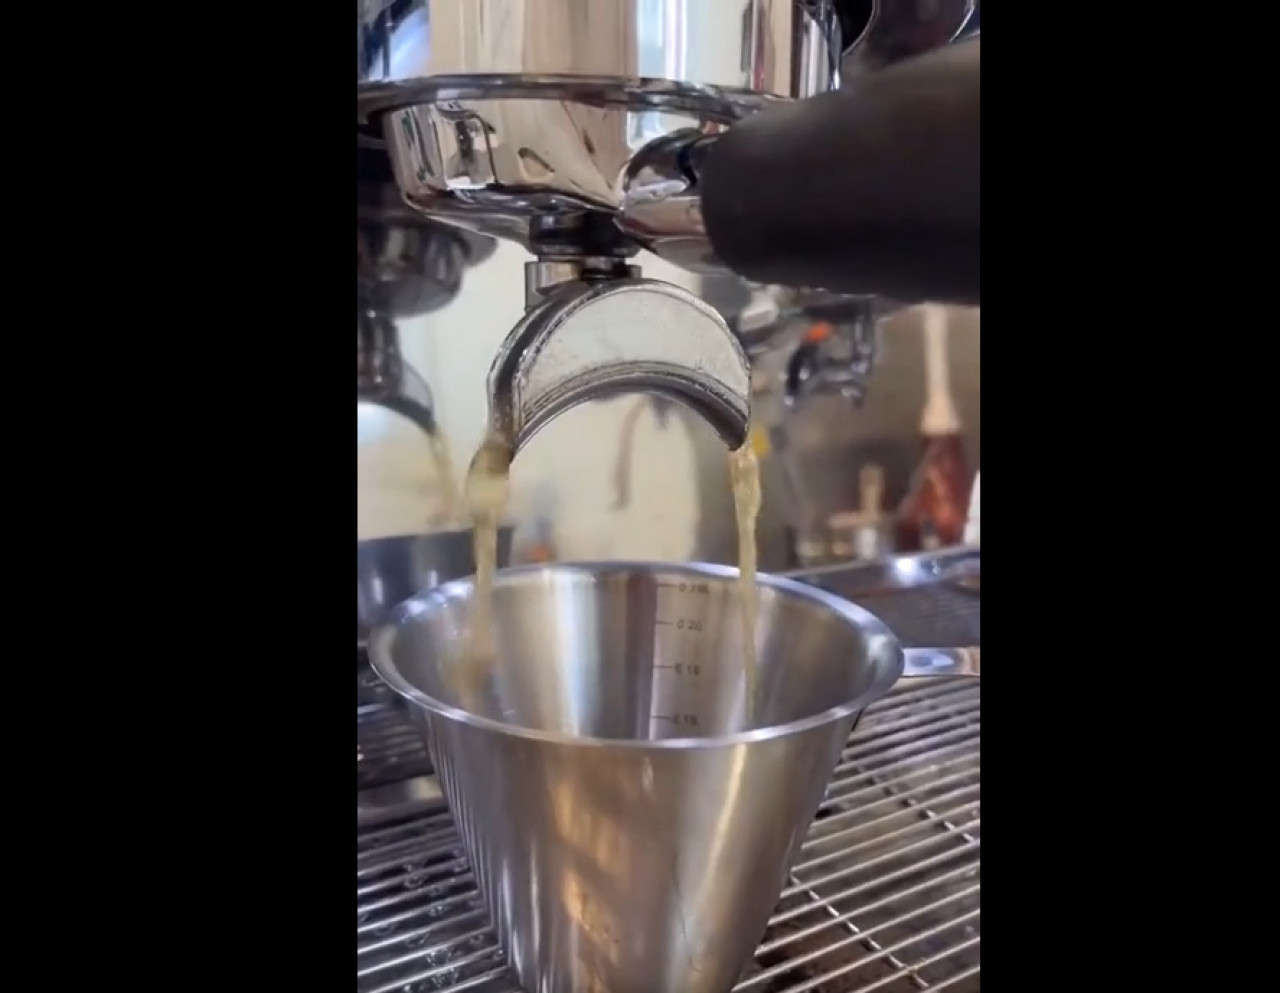 Preparación de un mate cocido espresso que se volvió viral. Fotos: Capturas.